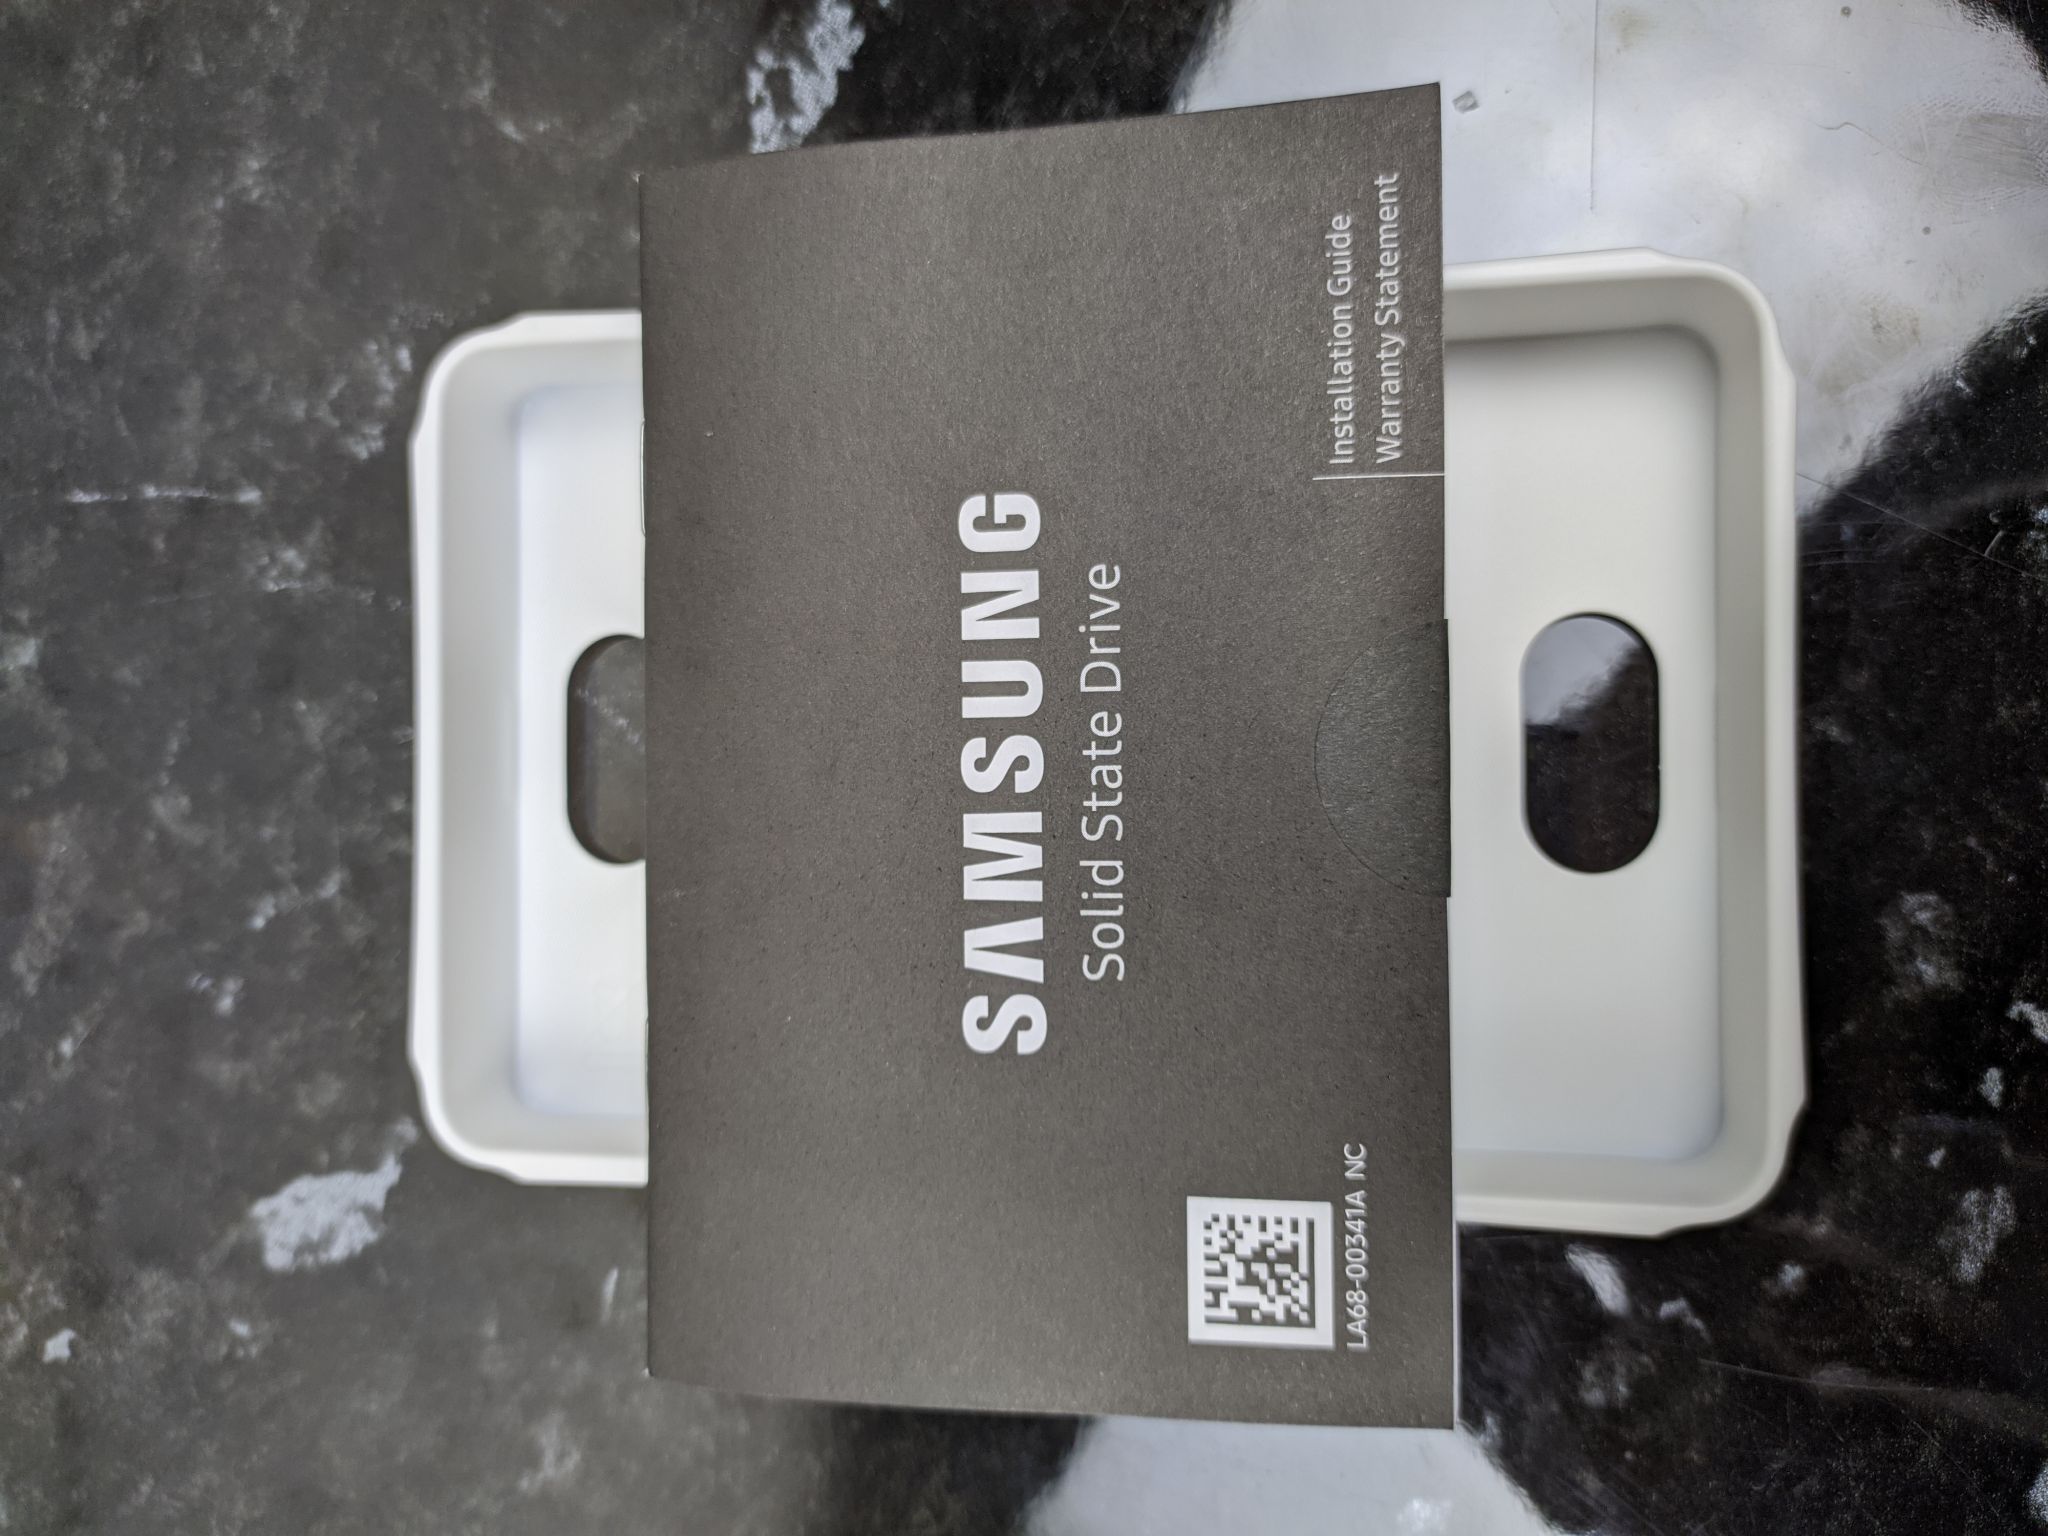 Ssd samsung 980 mz v8v1t0bw. Samsung 980 MZ v8v500bw 500гб. Samsung 980 [MZ-v8v1t0bw] ыв. SSD диск Samsung 980. Samsung m2 980.